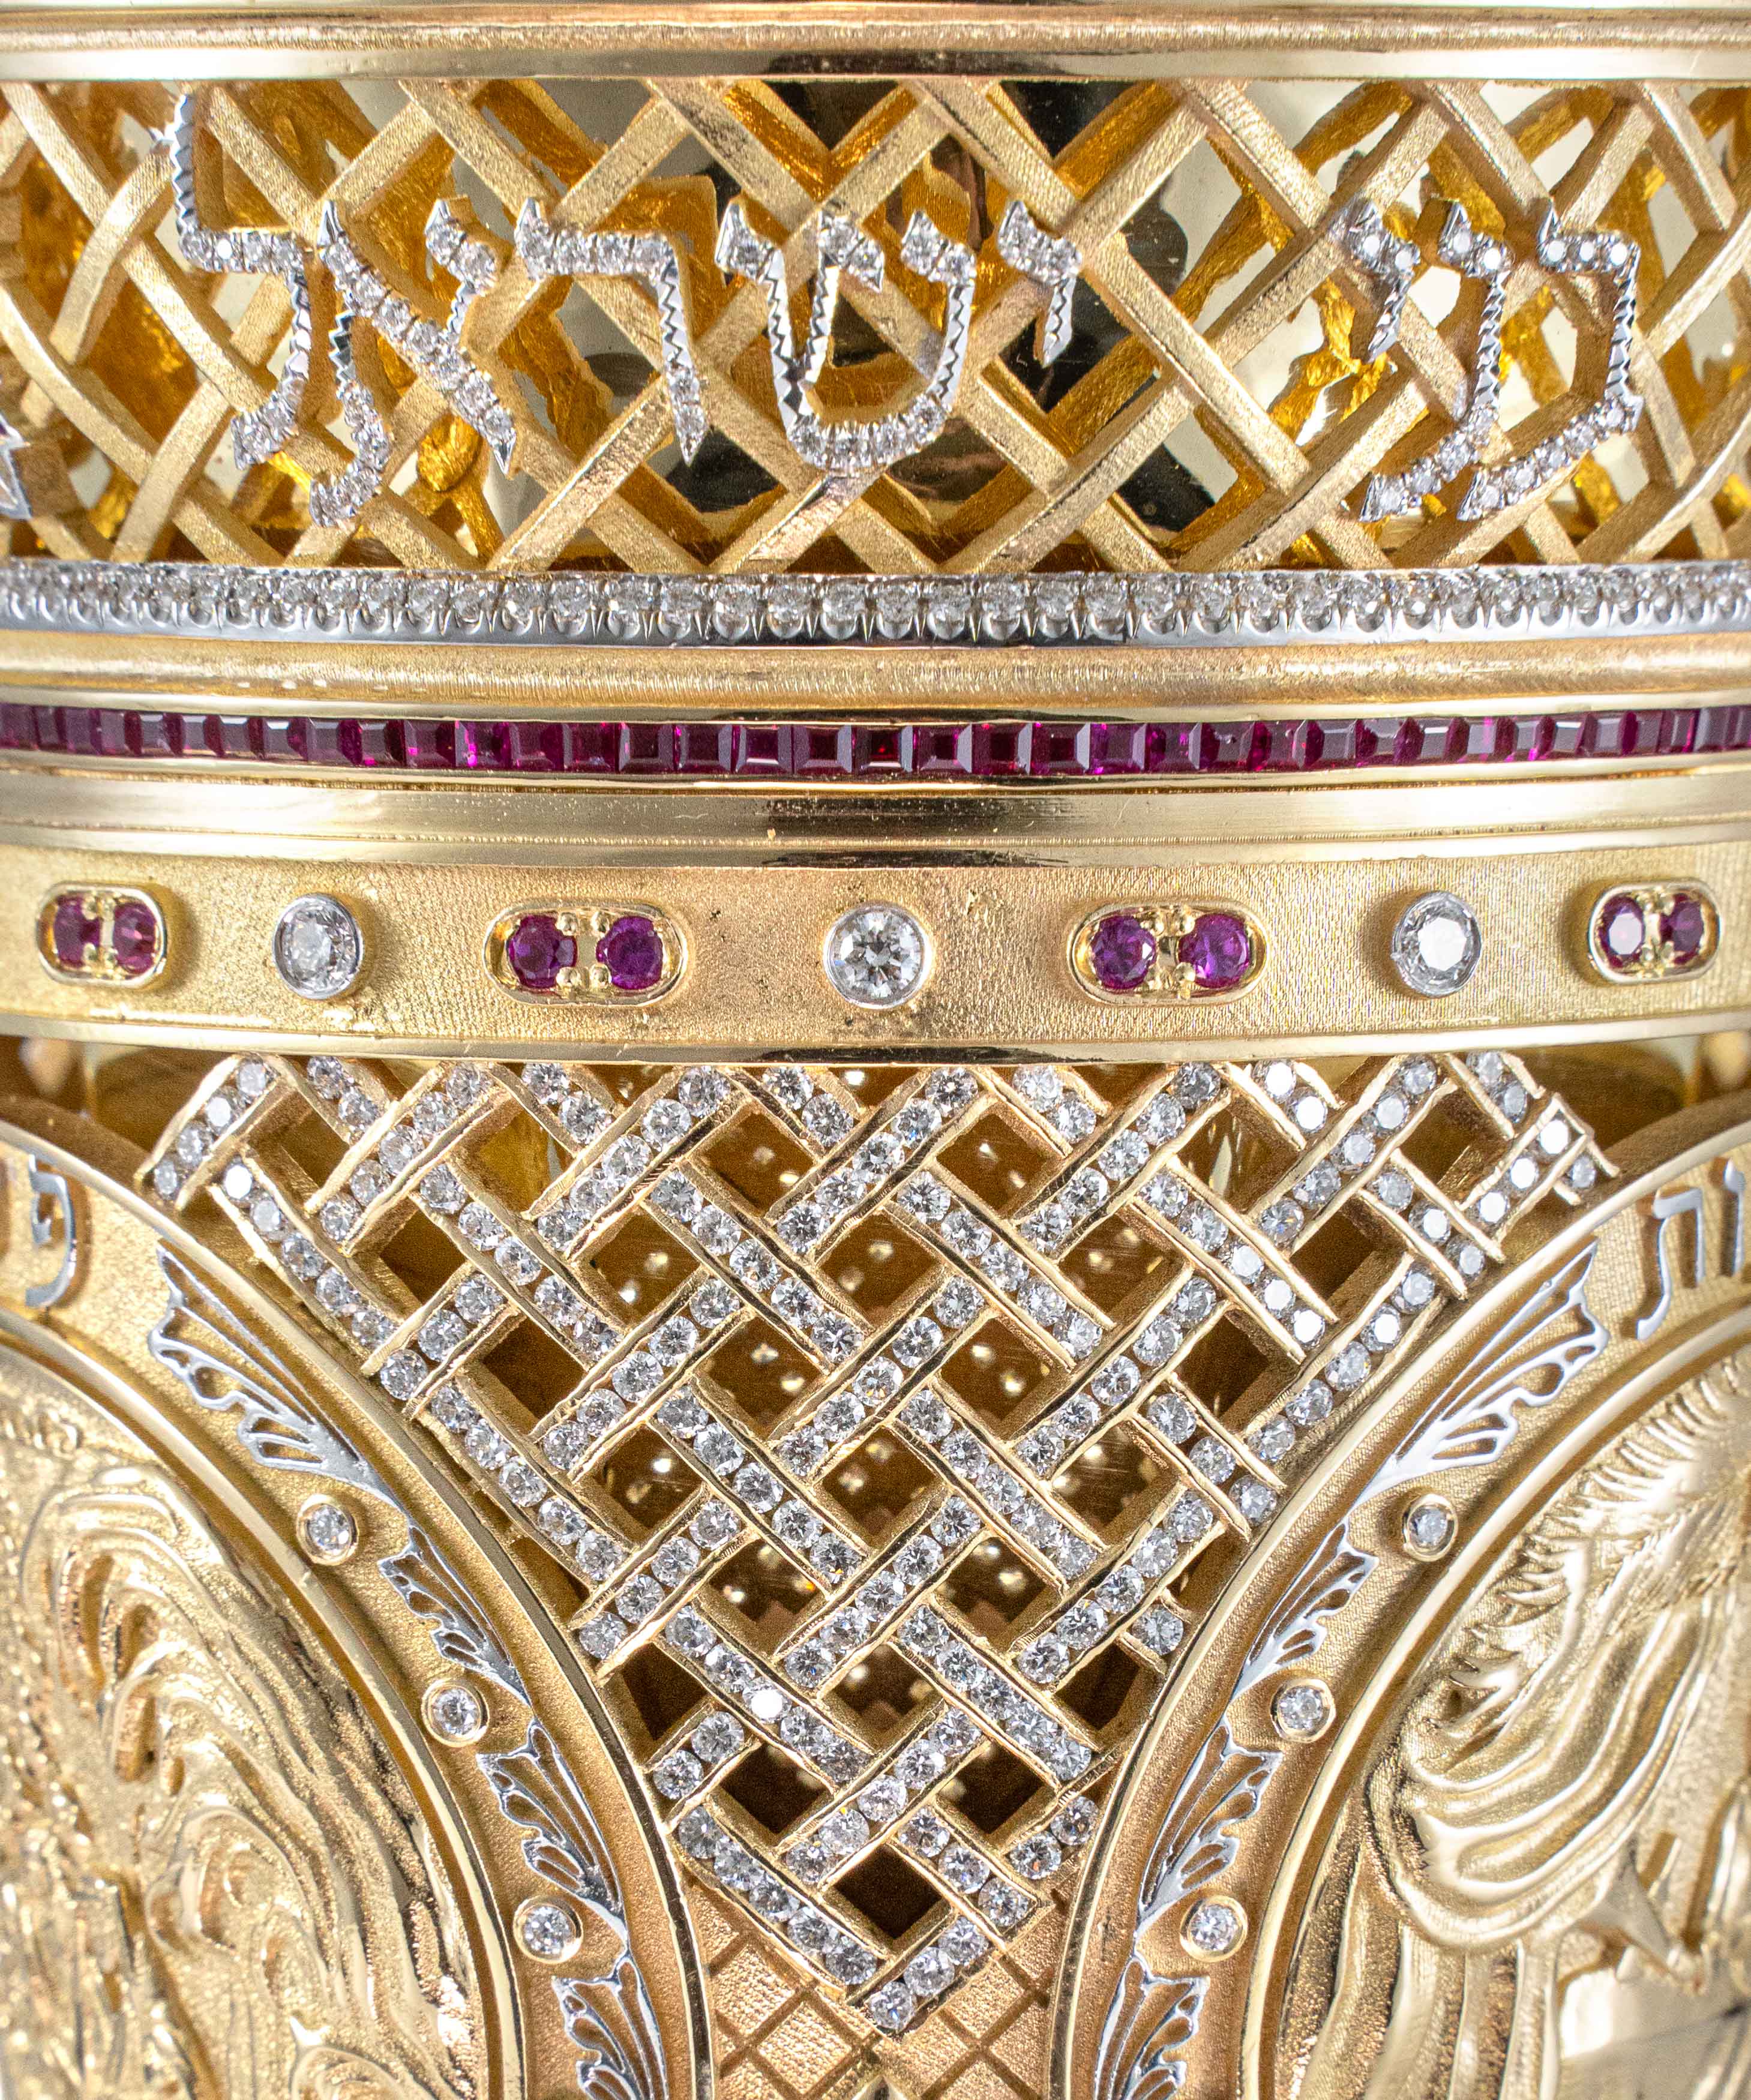 Golden Elijah's Goblet with the Pilgrimage Holidays